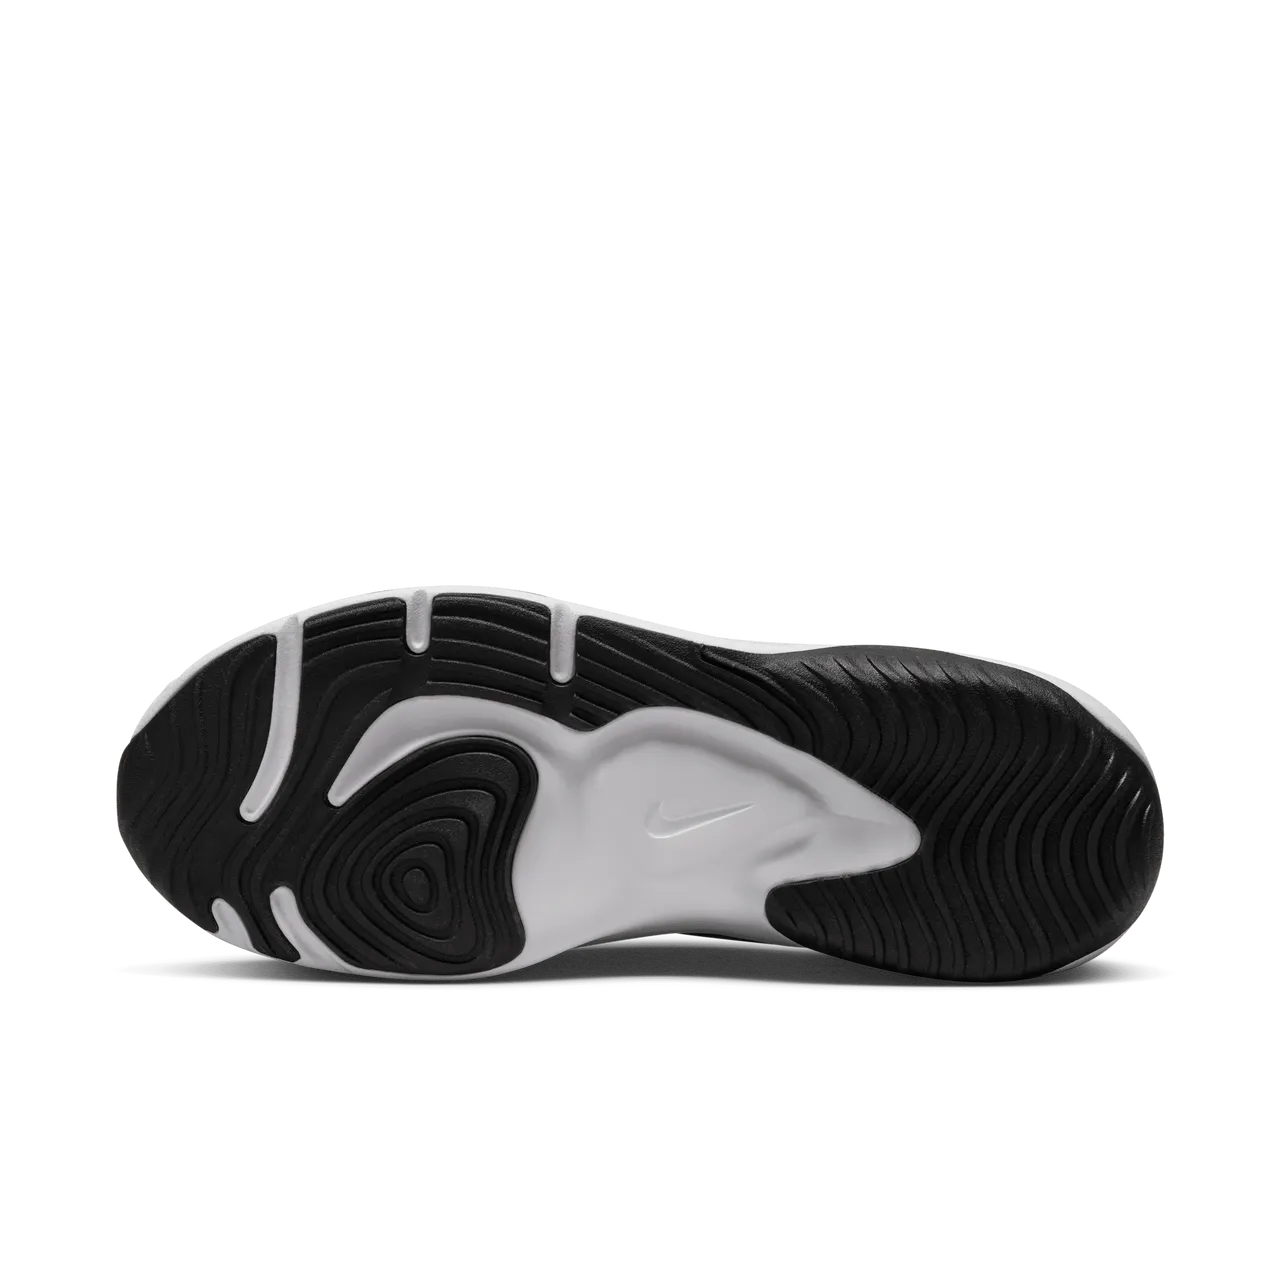 Nike Legend Essential 3 Next Nature Men's Workout Shoes - Black